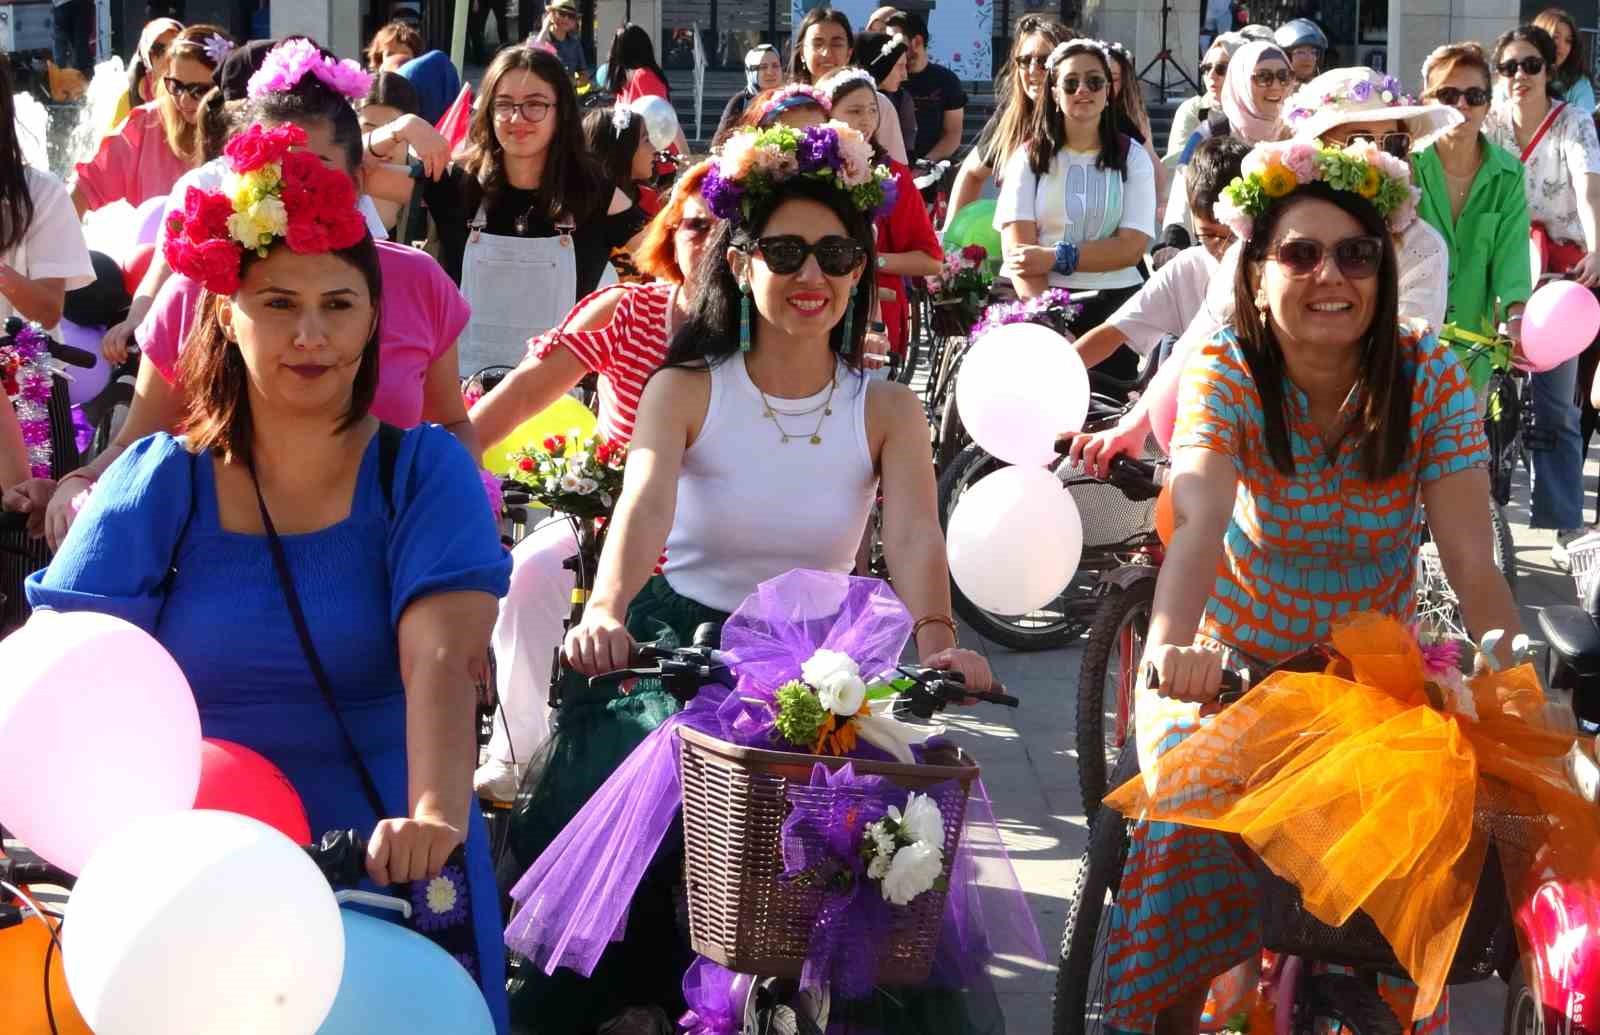 Kütahya’da ’Süslü Kadınlar Bisiklet Turu’ etkinliği renkli görüntülere sahne oldu